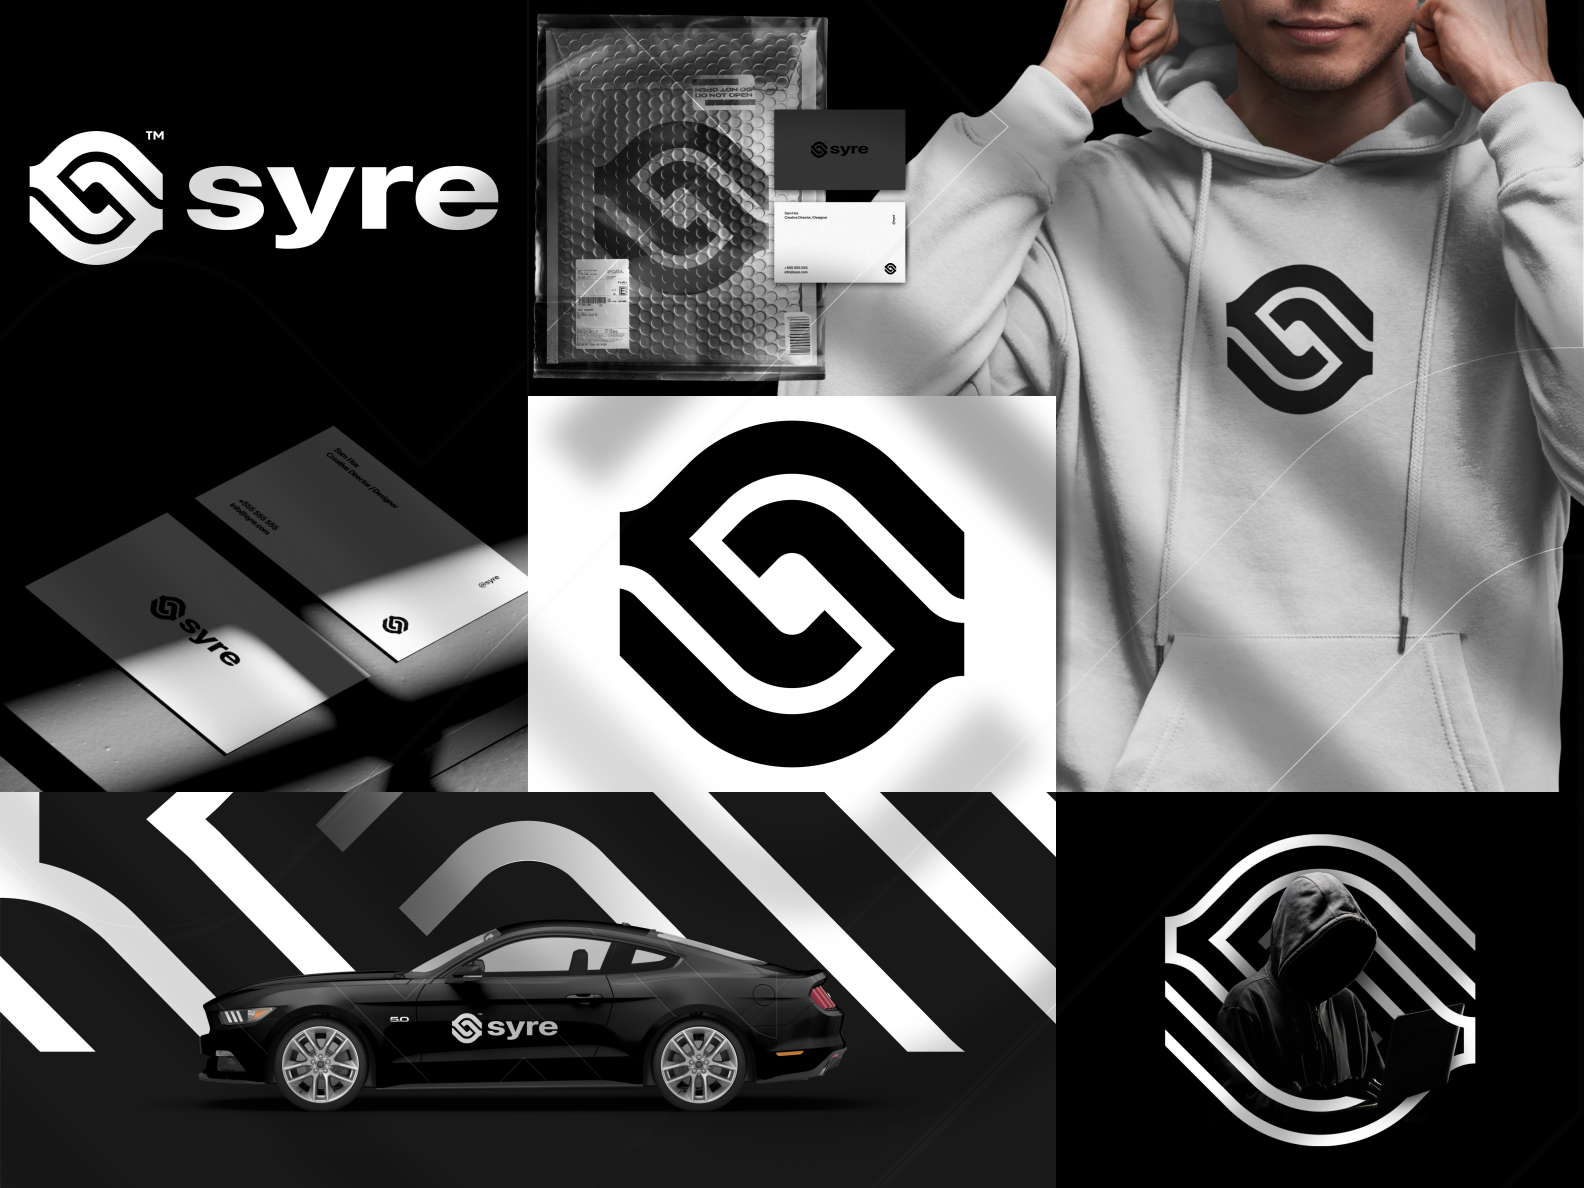 Syre Logo & Branding Design